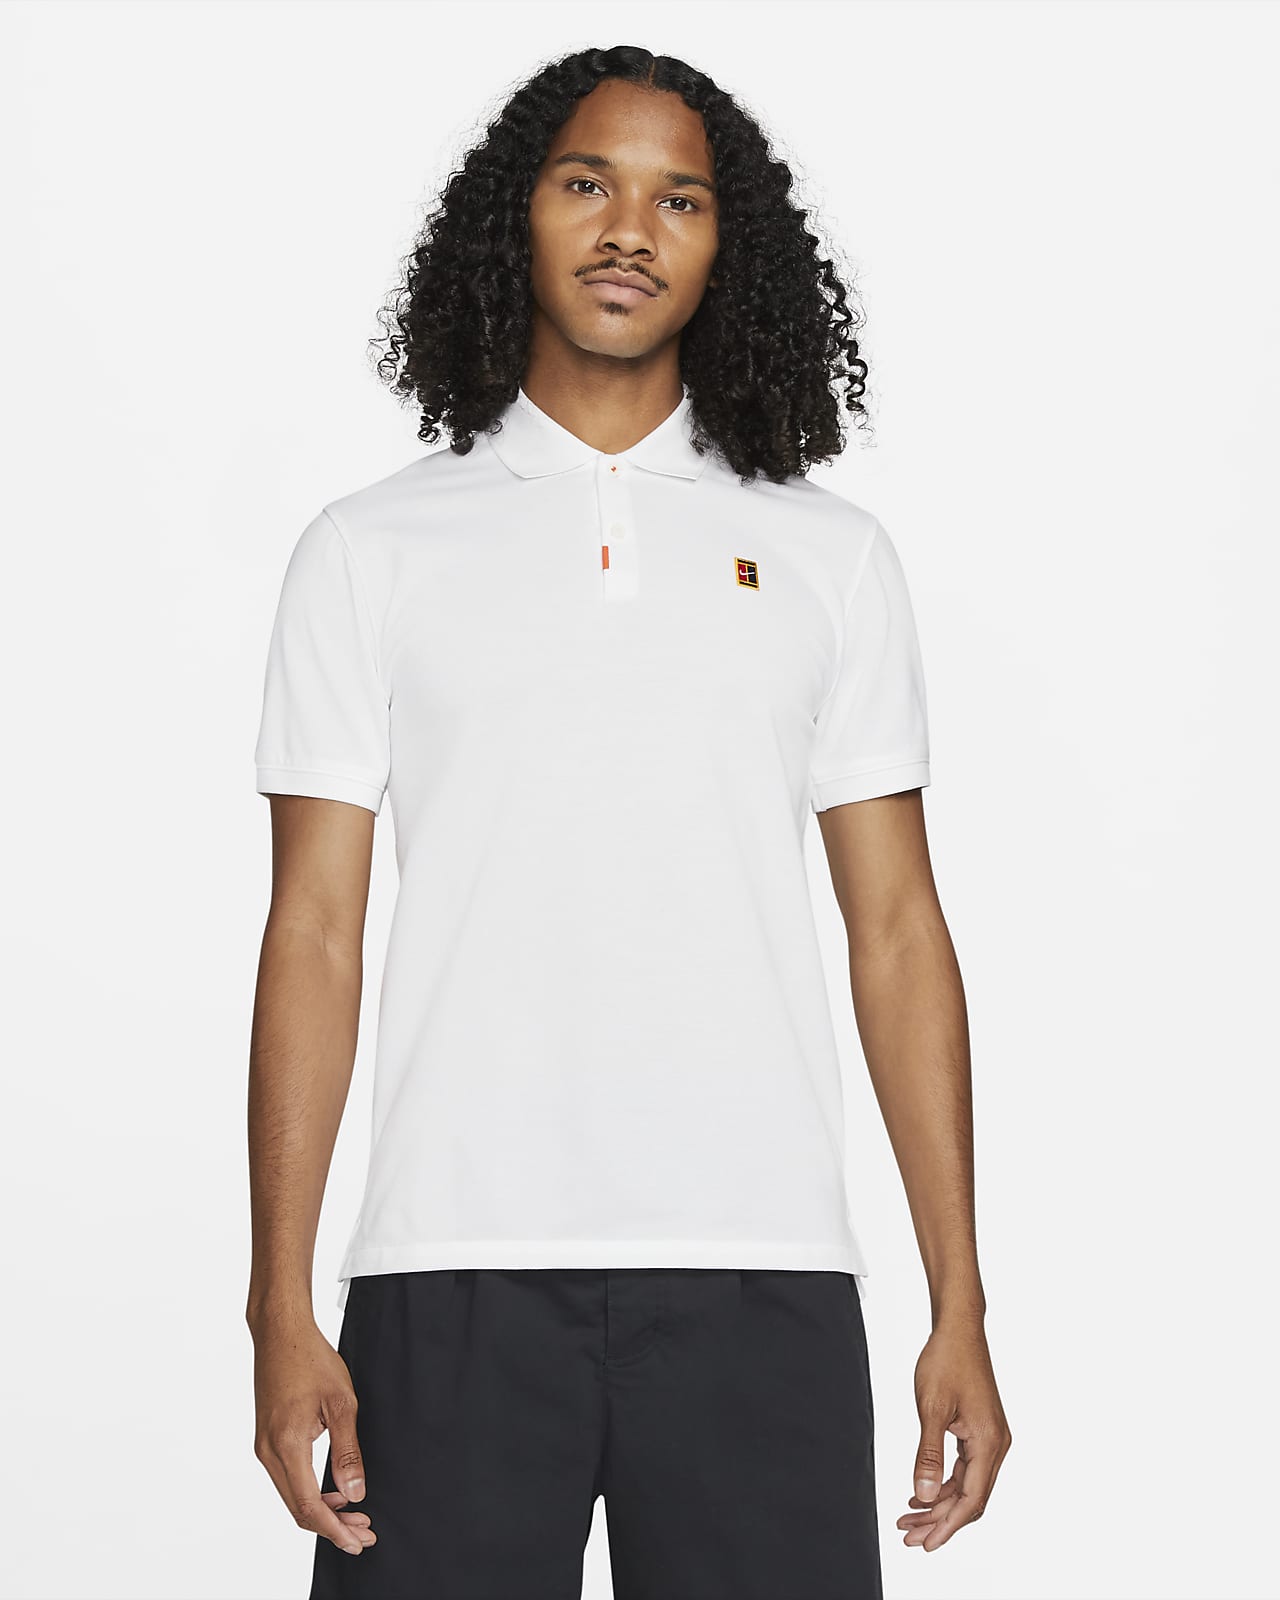 Das Nike Polo Herren-Poloshirt in schmaler Passform